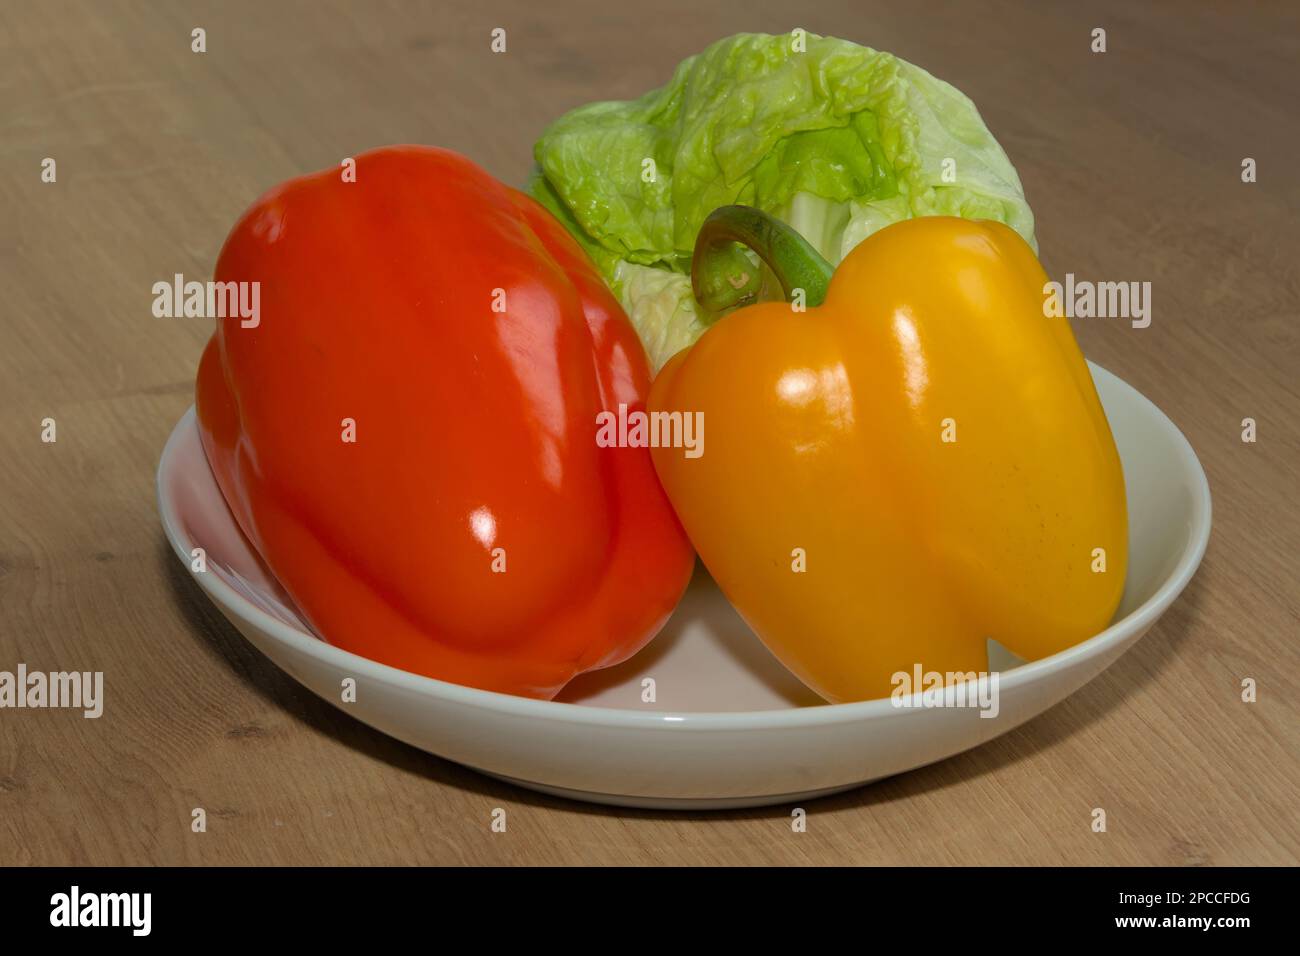 Roter Pfeffer oder Paprika, gelber Pfeffer oder Paprika und grüner Salat sind sehr gesunde Lebensmittel. Das Gemüse ist die perfekte Zutat für eine leckere Mahlzeit. Stockfoto